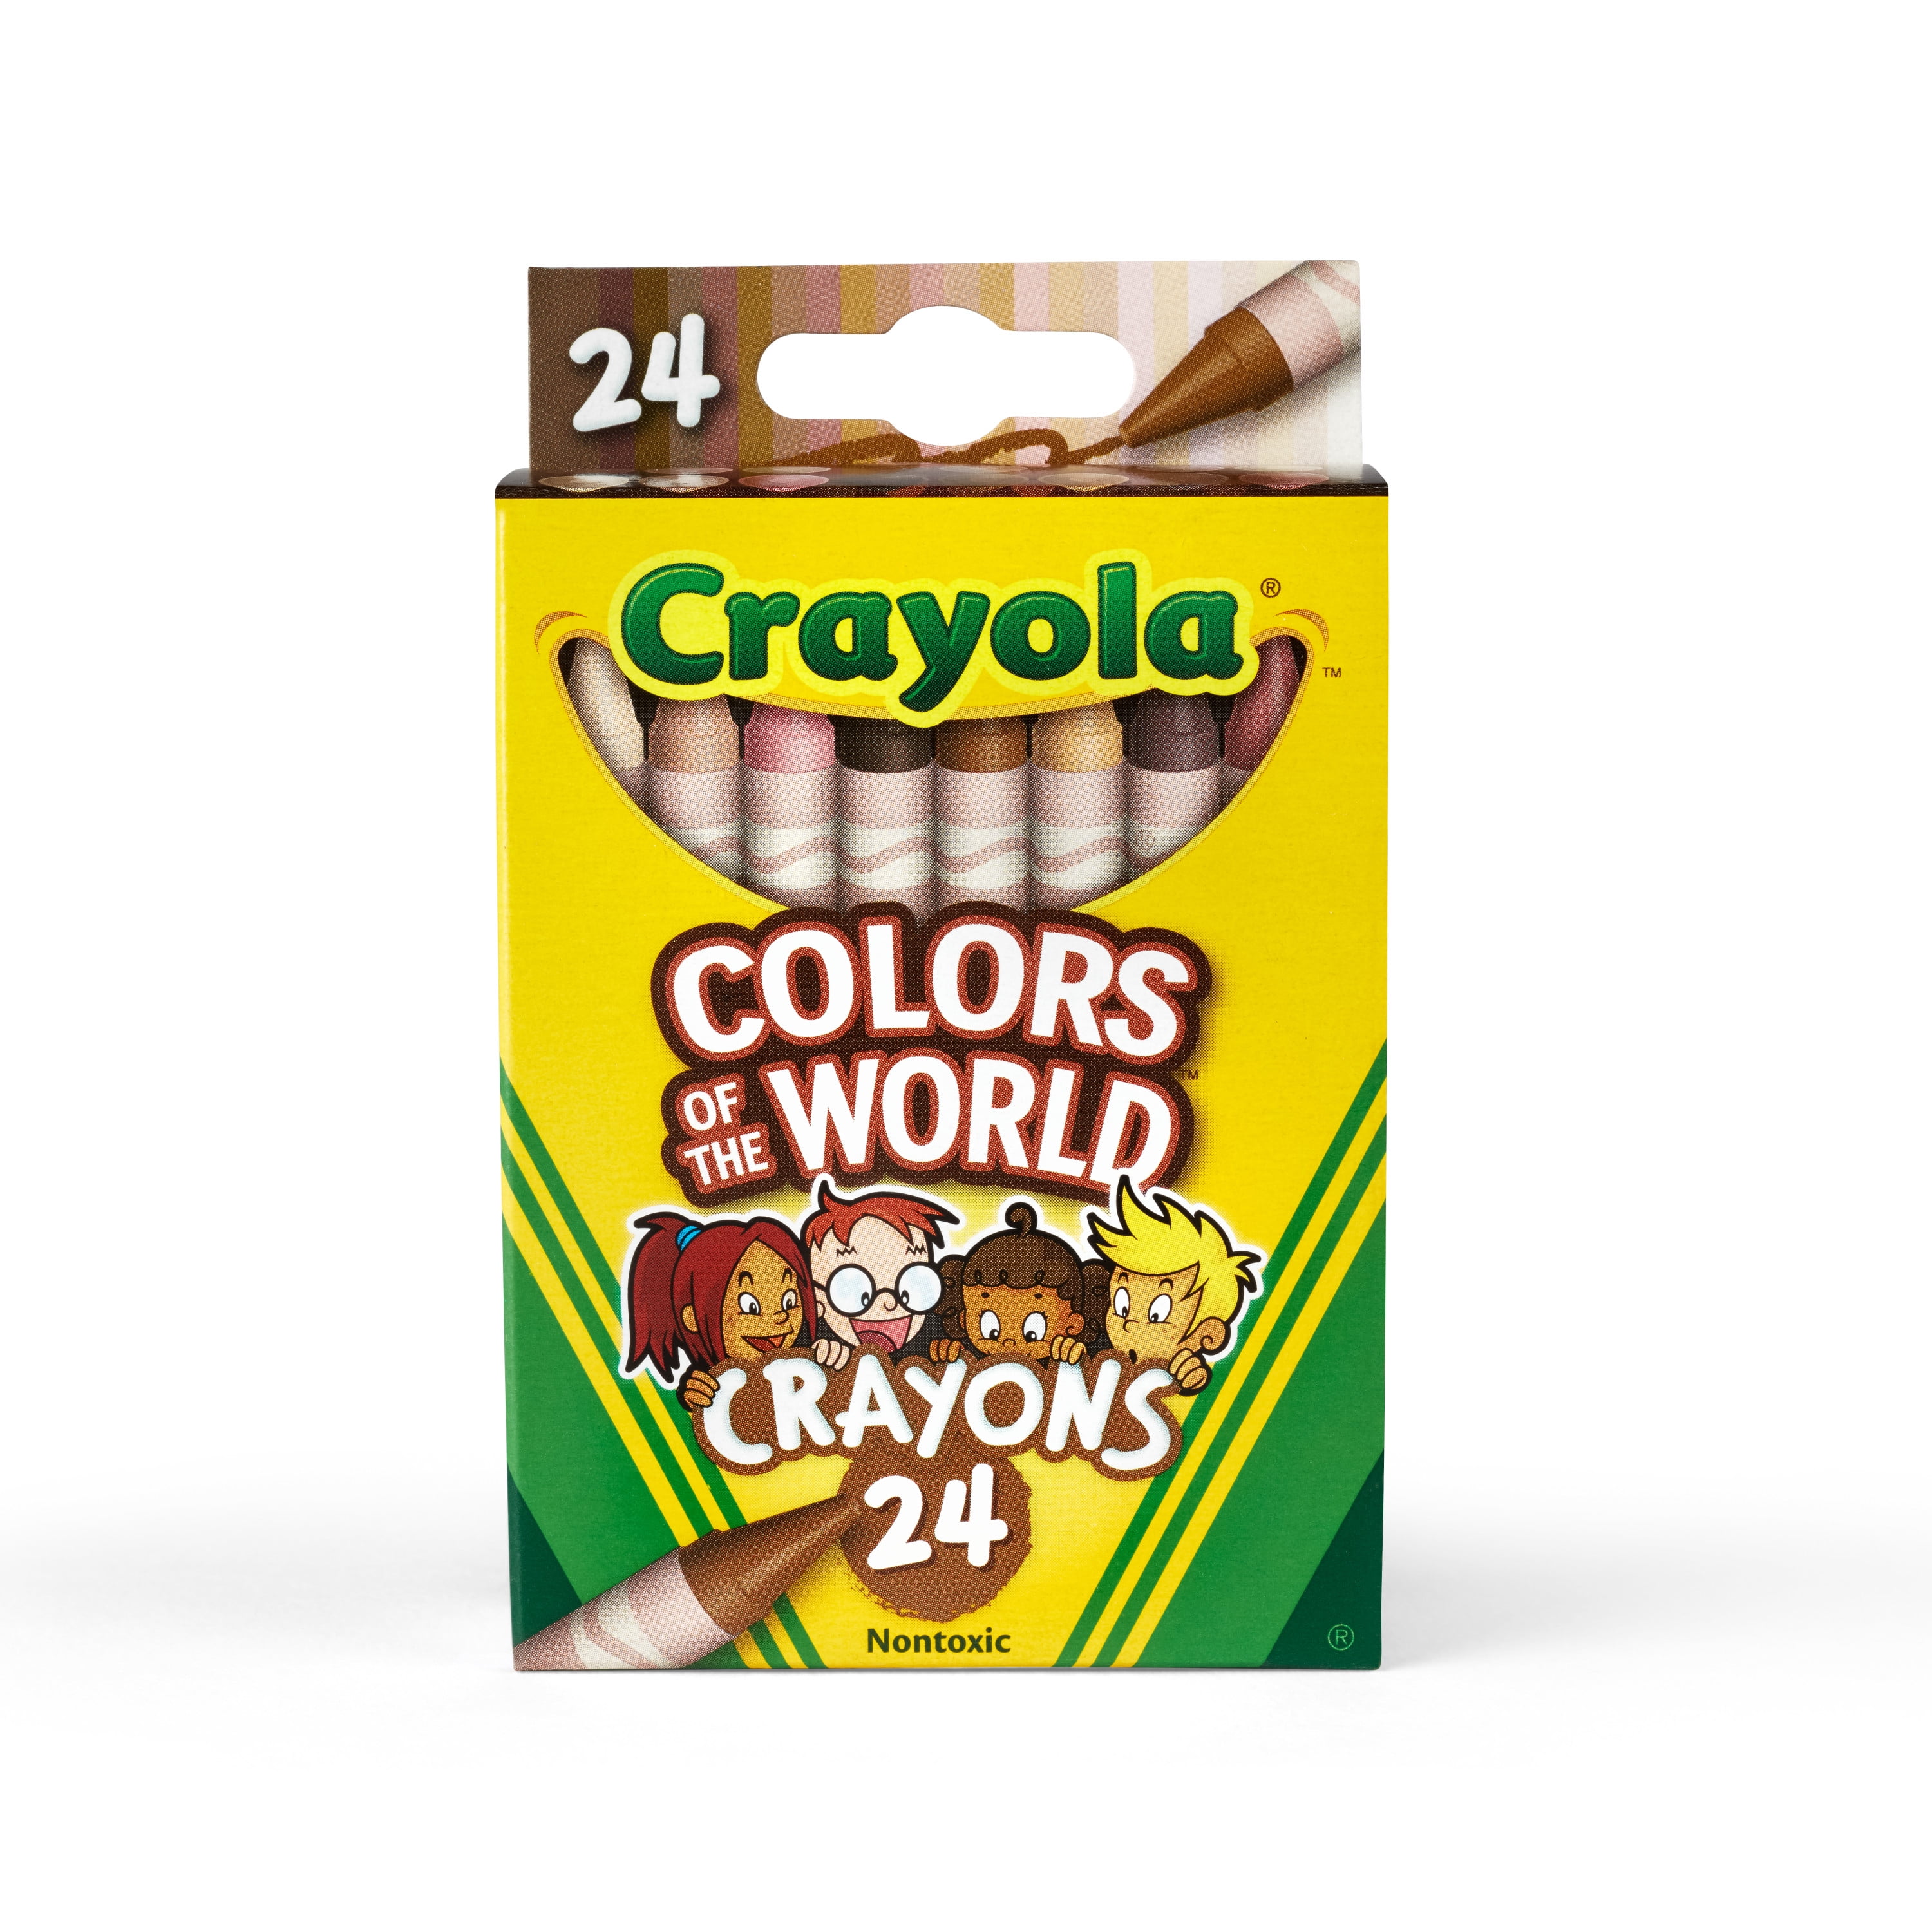 Crayola Crayons, Nontoxic - 24 crayons